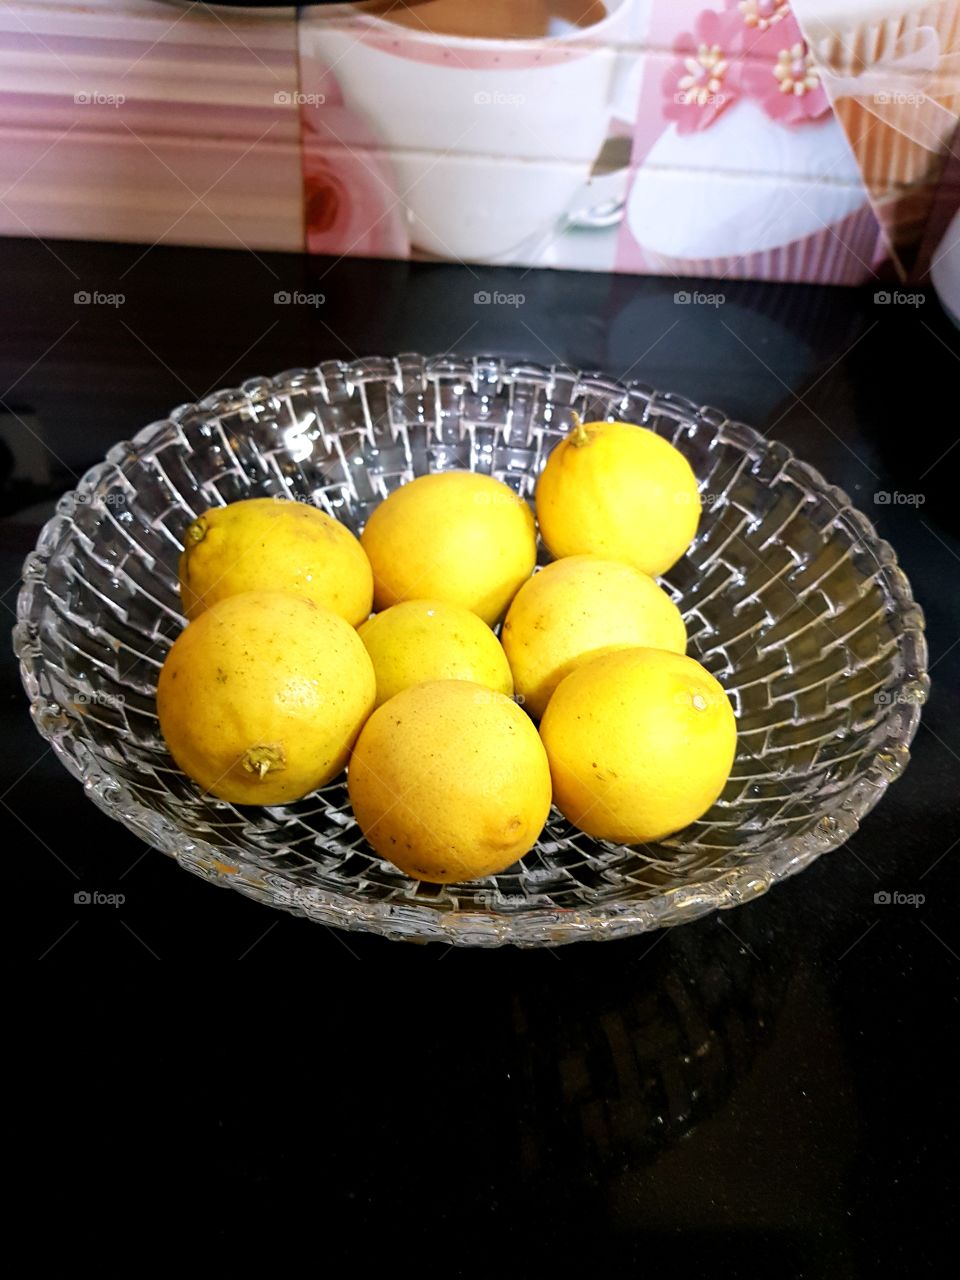 i plucked fresh lemons from my garden.